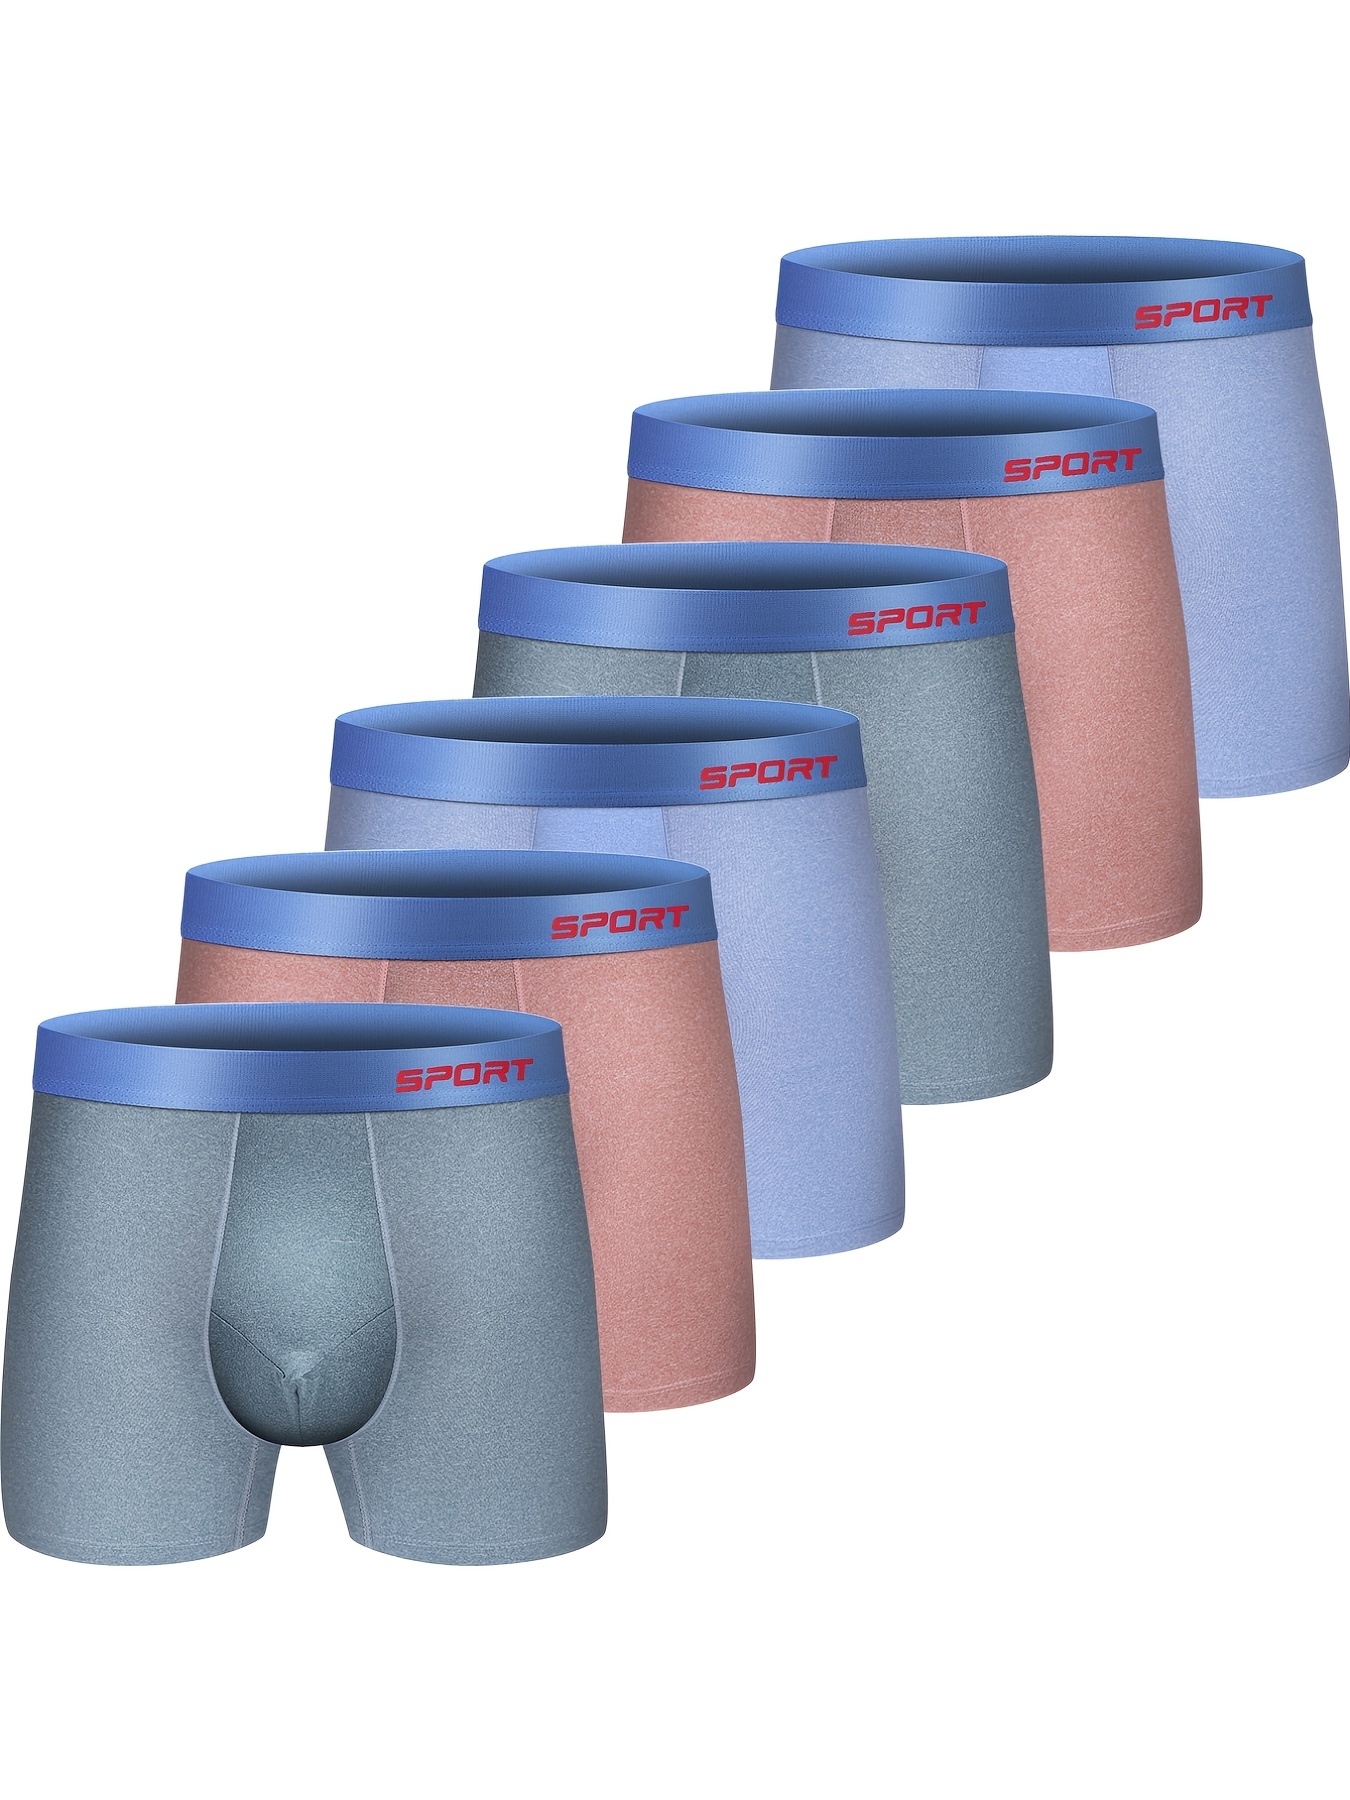  Men's Underwear - Athletic Works / Men's Underwear